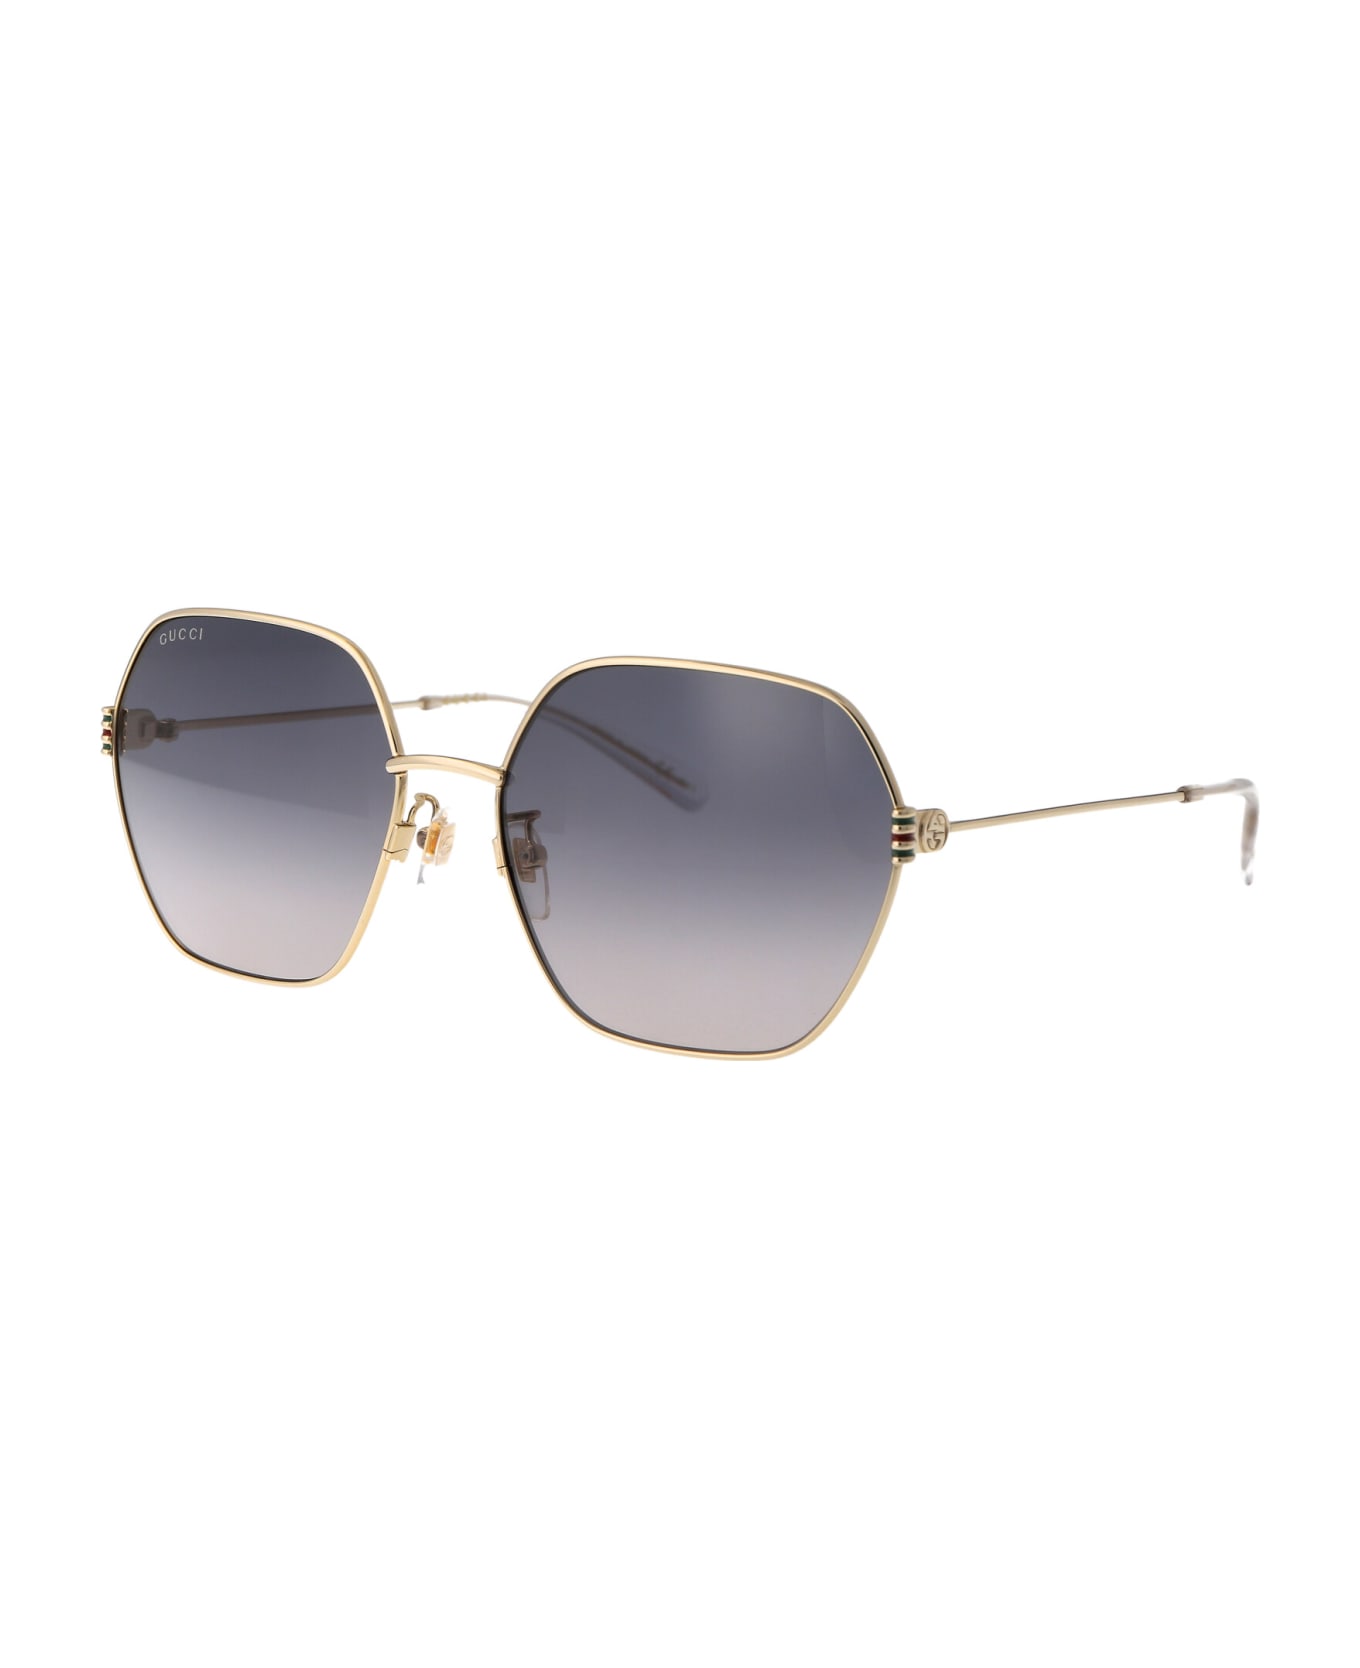 Gucci Eyewear Gg1285sa Sunglasses - 001 GOLD GOLD GREY